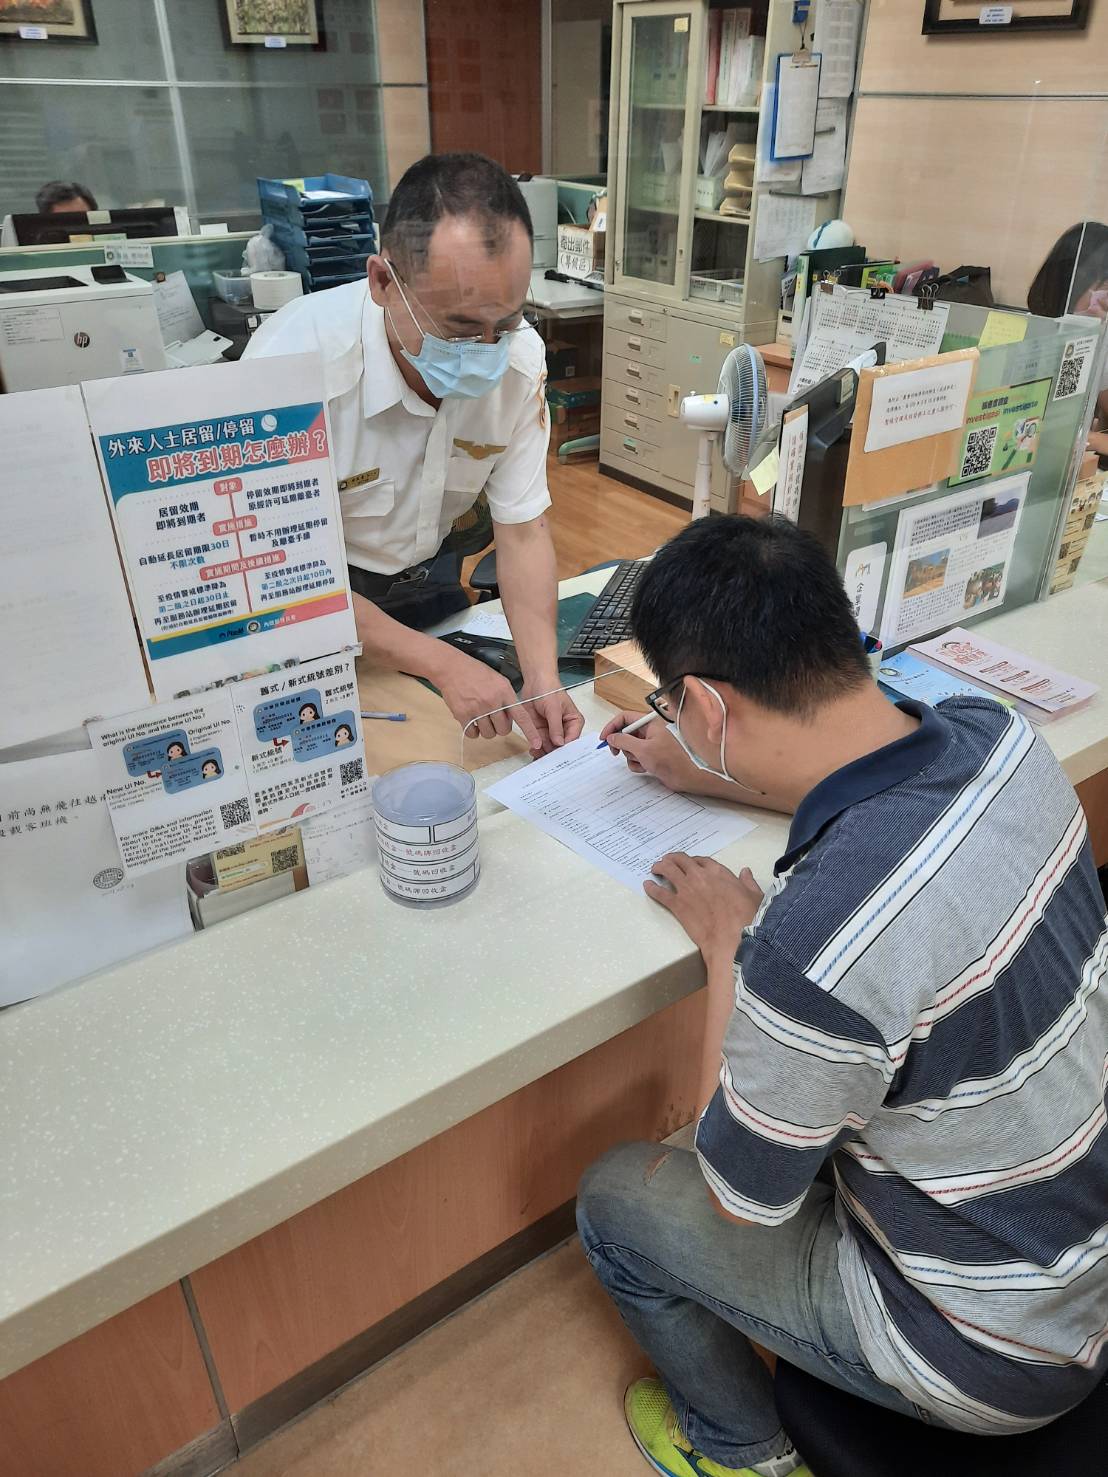 Dengan kode seragam bagi warga negara asing, warga negara asing yang berada di Taiwan dapat meregistrasikan diri untuk menerima vaksinasi. Warga dapat segera mengajukan aplikasi untuk kode tersebut di kantor layanan imigrasi terdekat. Sumber: Kantor Layanan Imigrasi Kota Chiayi 